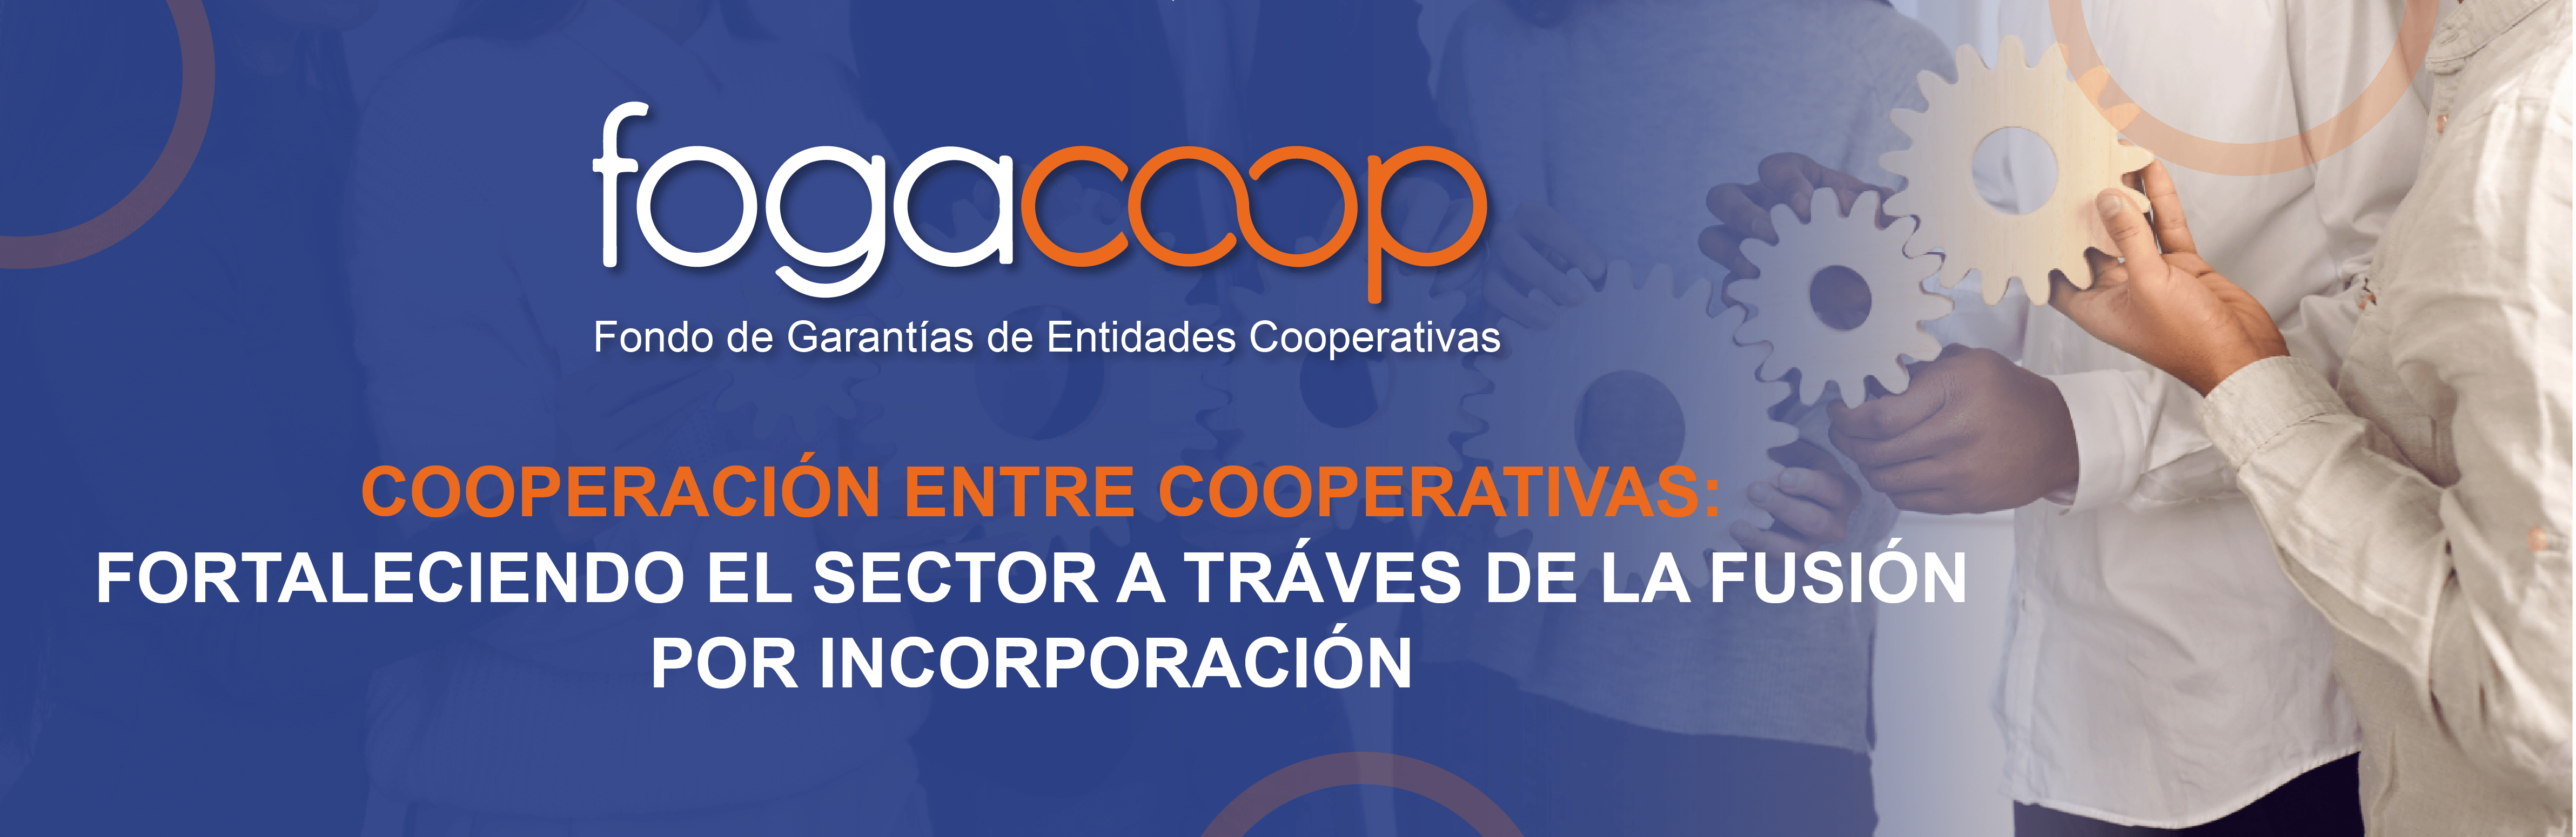 Cooperación entre cooperativas: fortaleciendo el sector a través de la fusión por incorporación